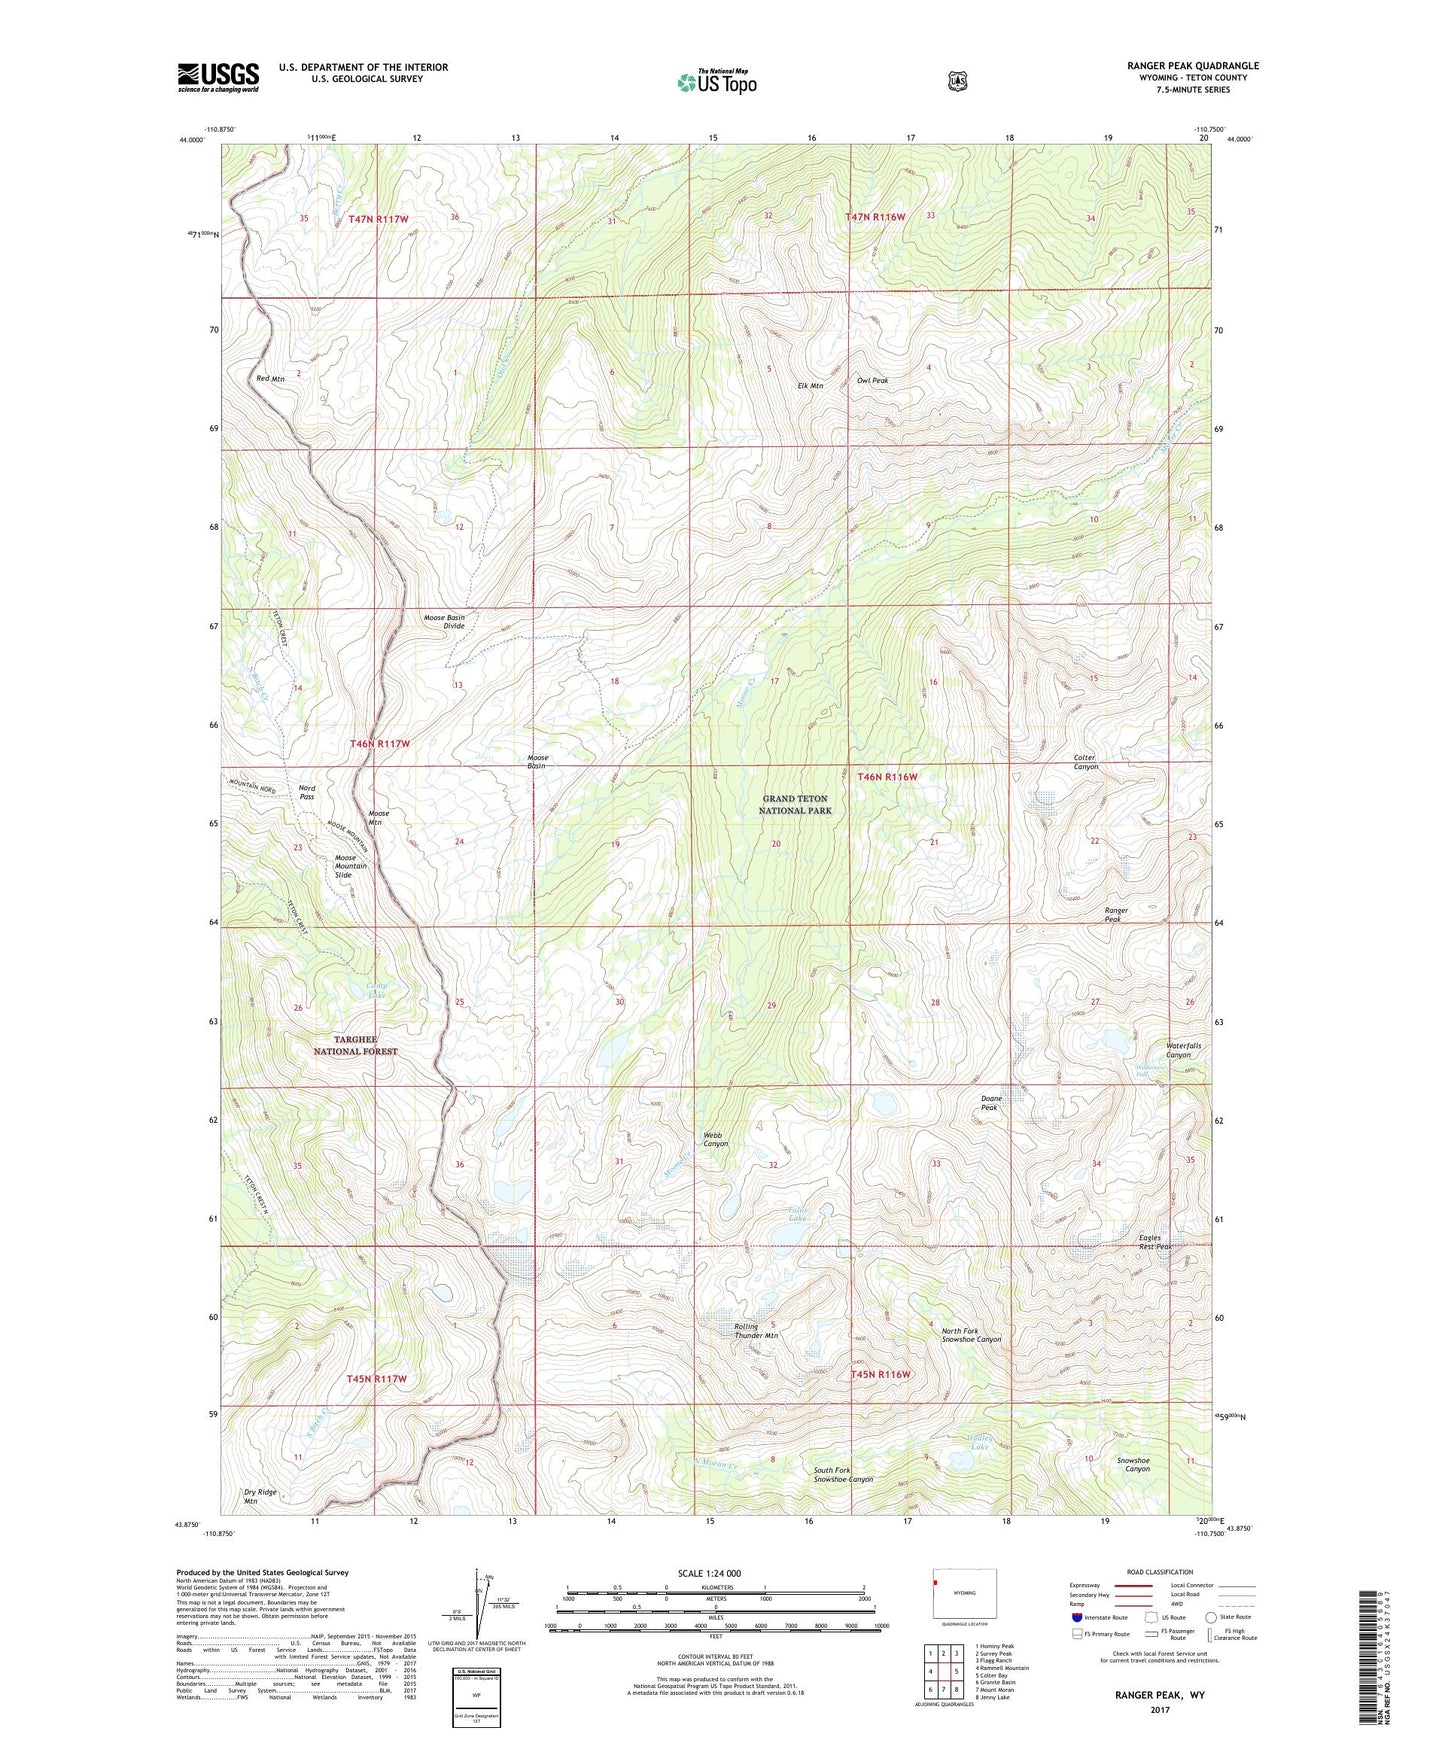 Ranger Peak Wyoming US Topo Map Image